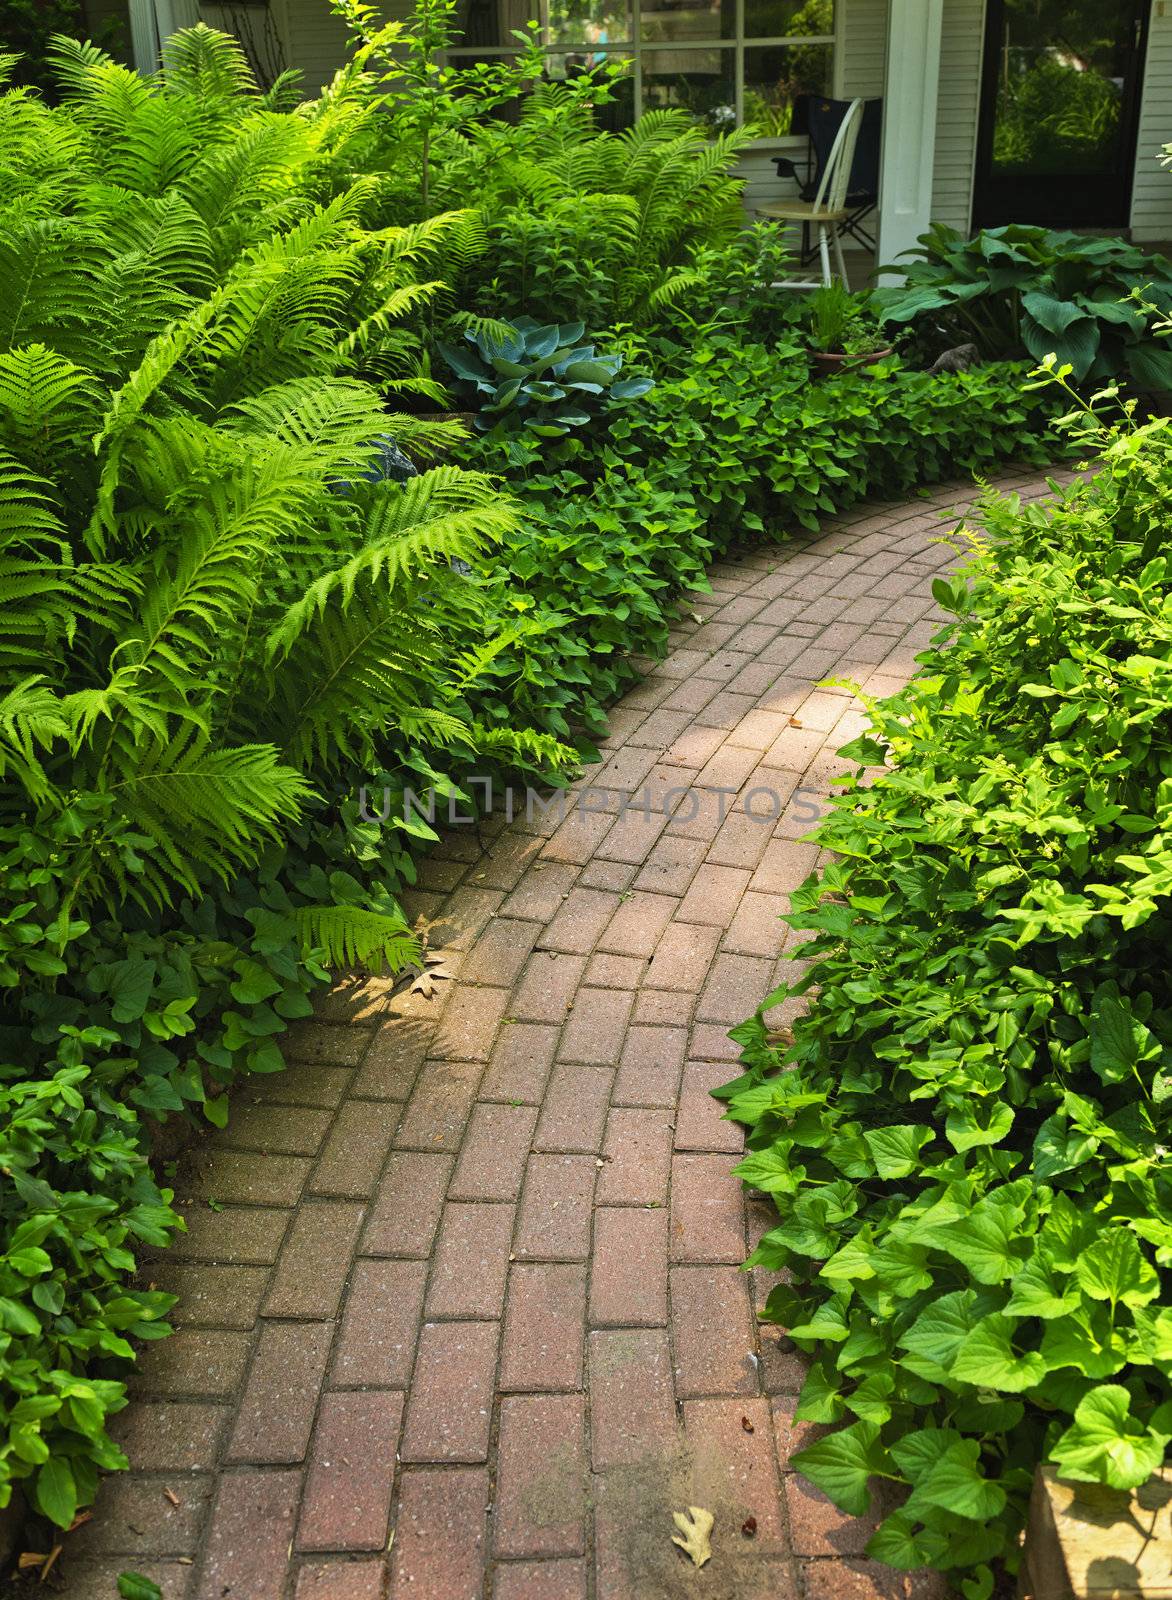 Brick path in landscaped garden by elenathewise